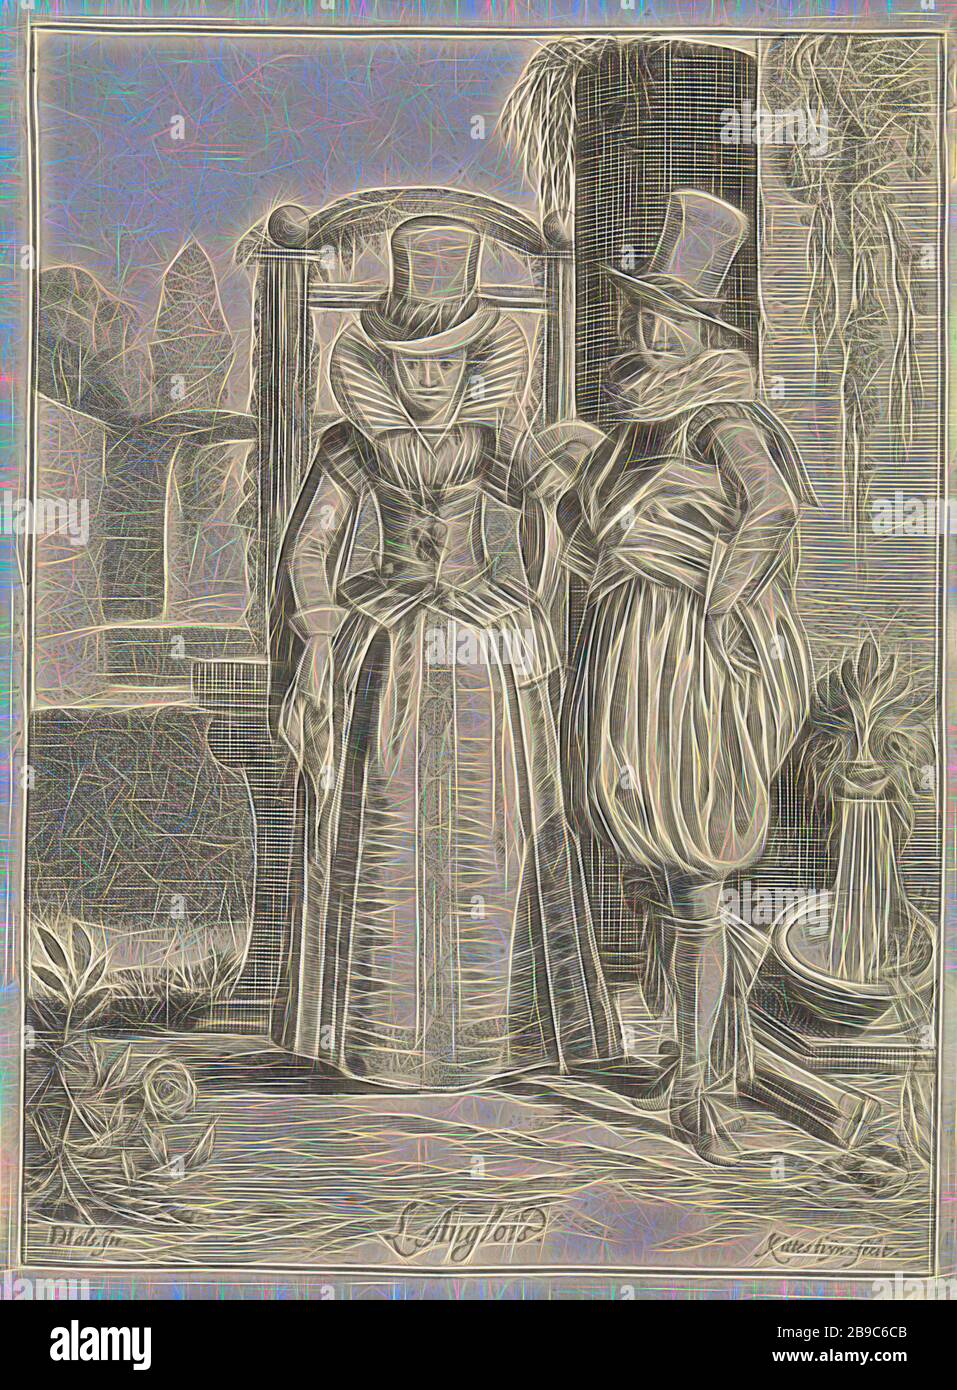 Couple élégant en anglais de l'habillement L'Anglois (titre sur l'objet)  des costumes en Europe (titre de la série), en face d'un axe, une colonne  et une fontaine est un élégant couple en